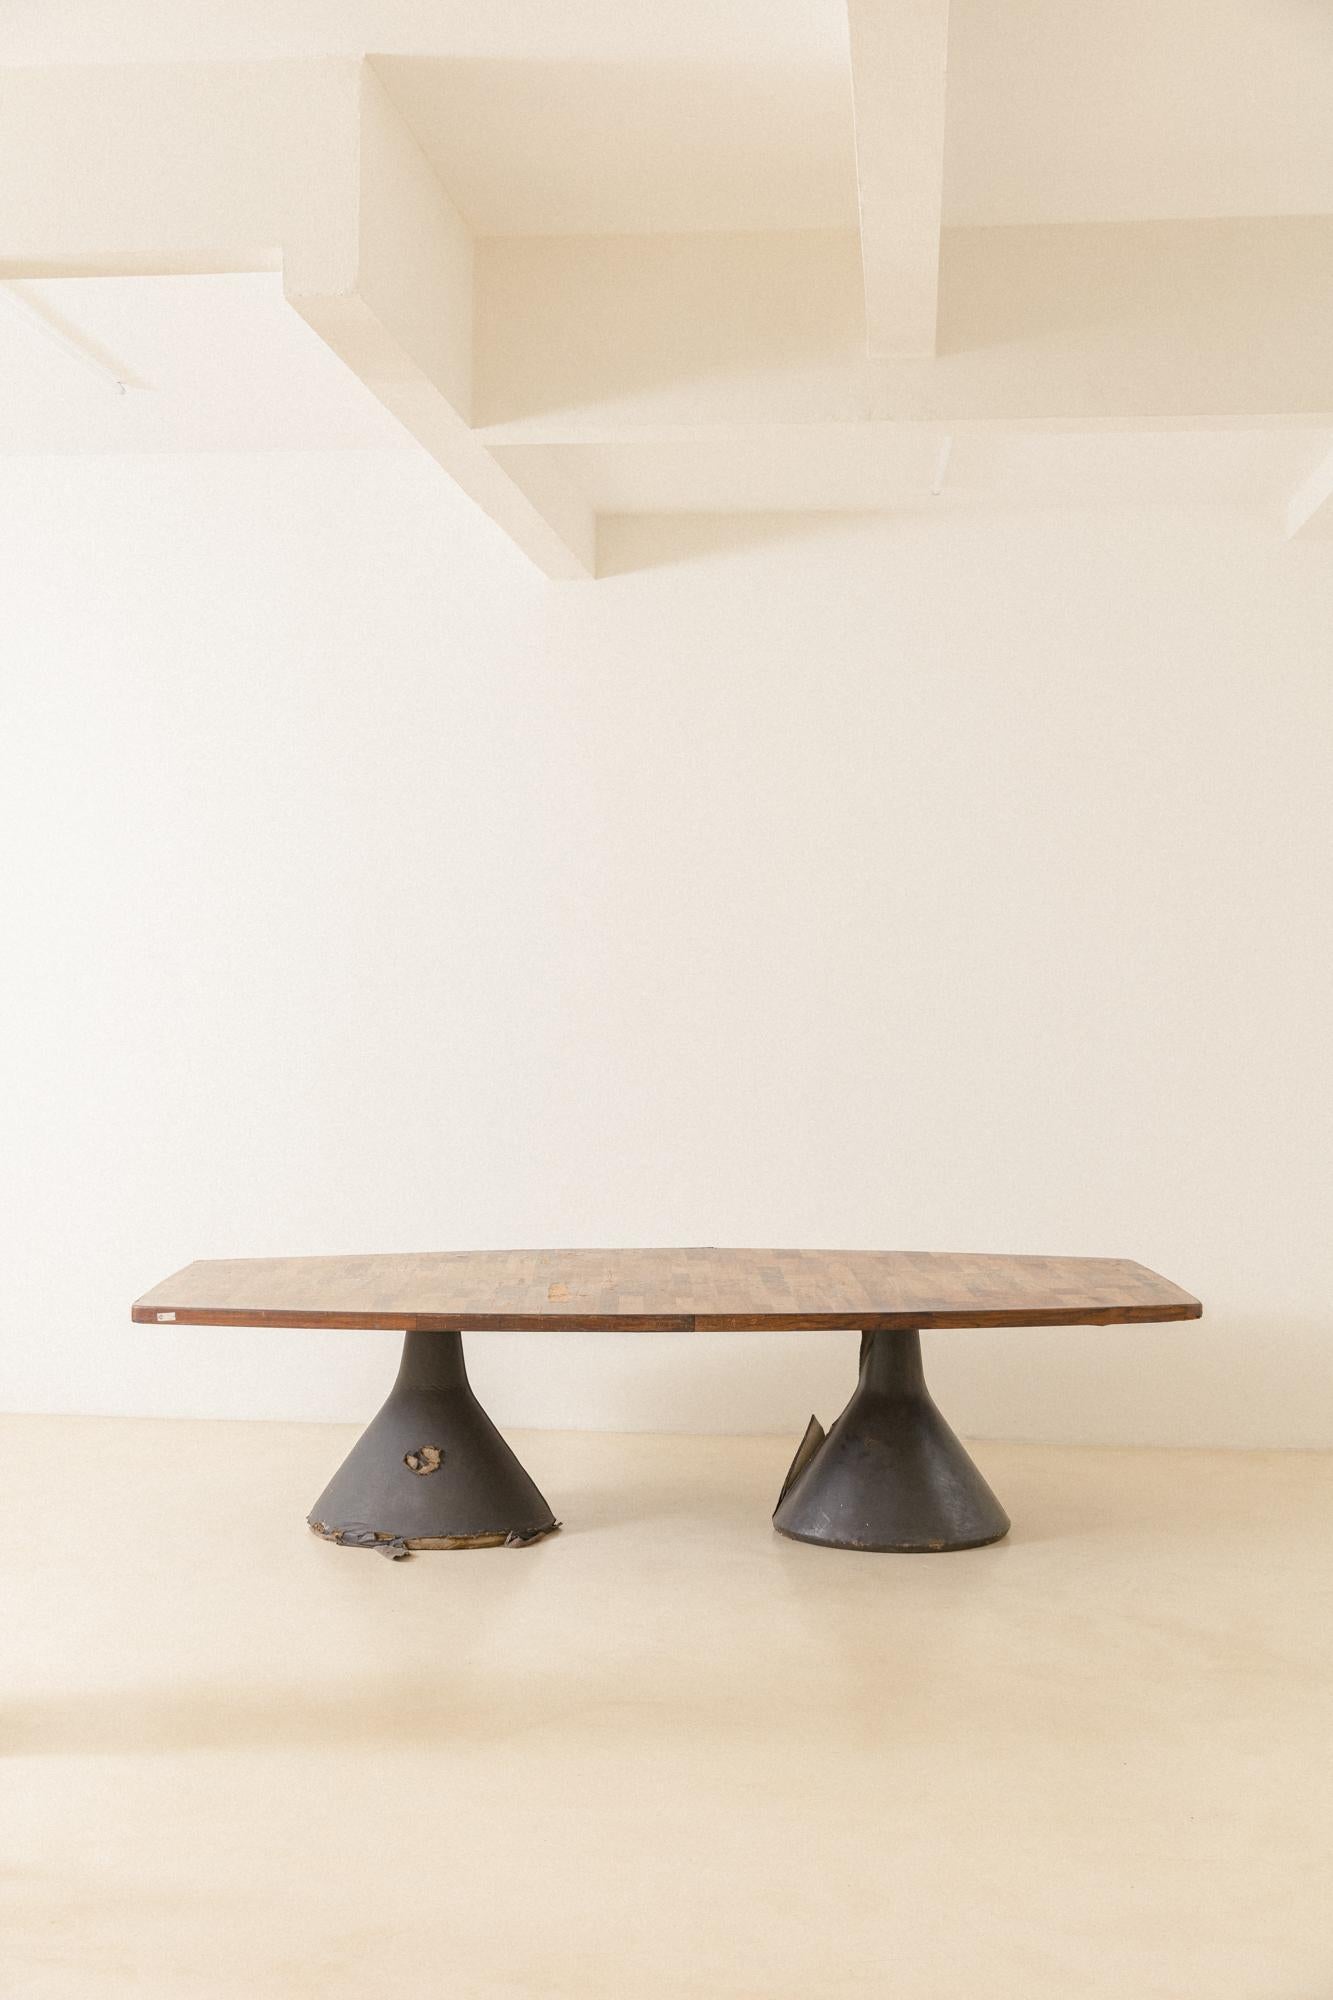 Der ikonische Guanabara ist ein Tisch, der 1959 von Jorge Zalszupin (1922-2020) entworfen und von seinem Unternehmen L'Atelier hergestellt wurde. Eine lange Patchworkplatte aus Palisanderholz ruht auf zwei mit schwarzem Leder bezogenen